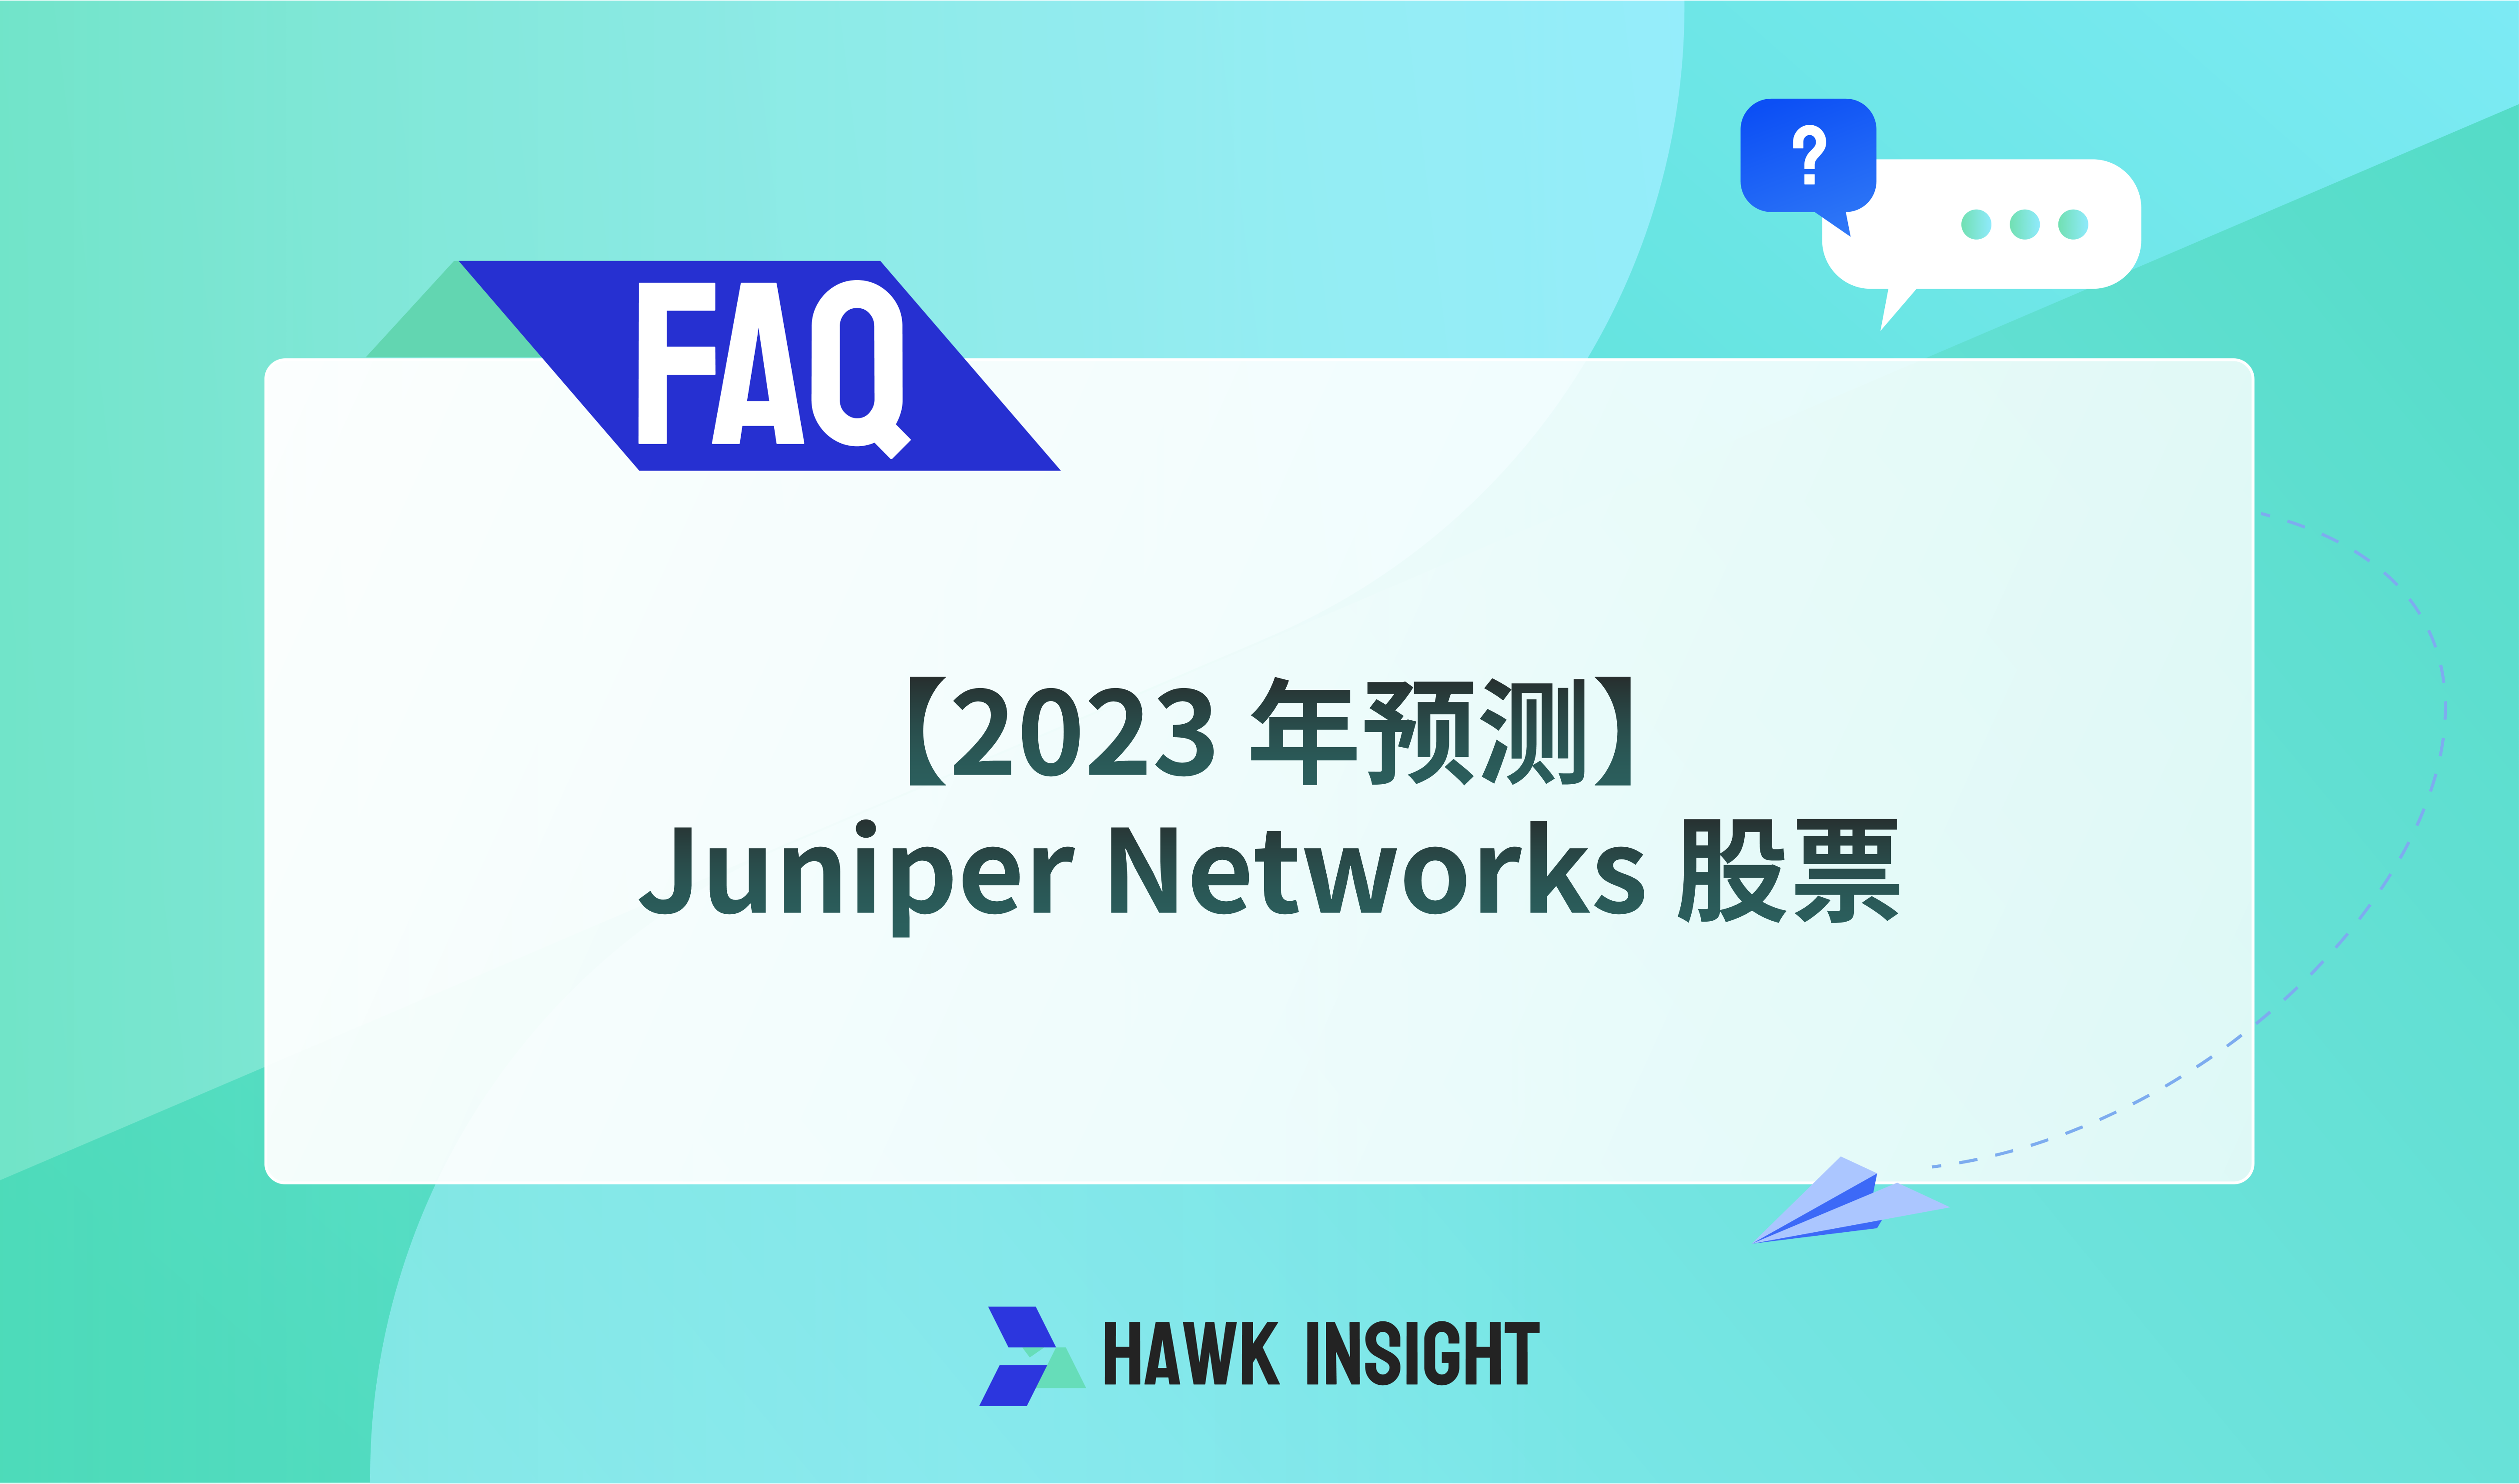 【2023 年预测】Juniper Networks 股票